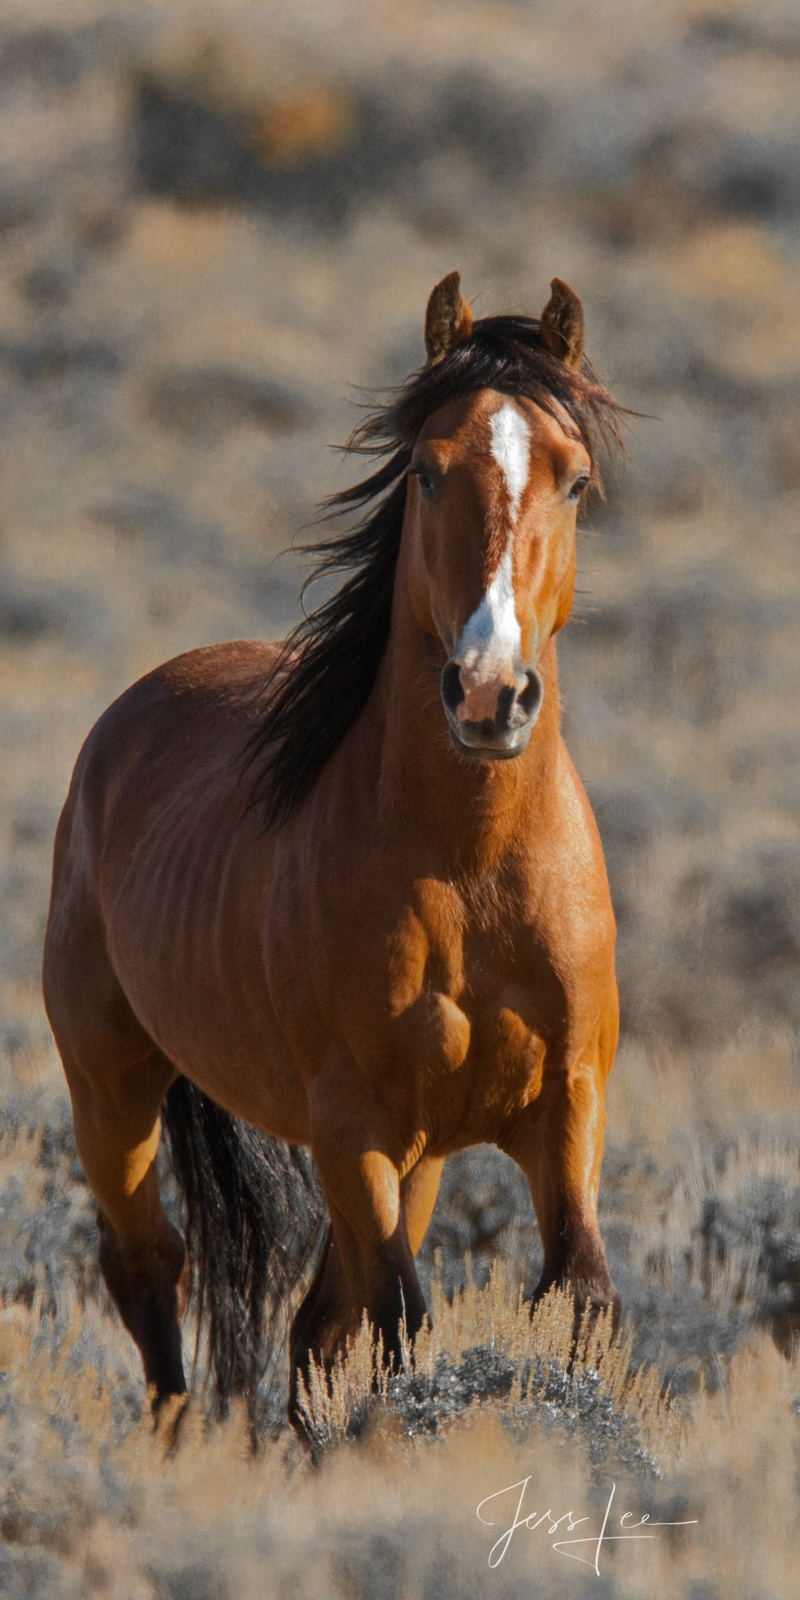 Sagebrush Basin Wild Horse Stallion.